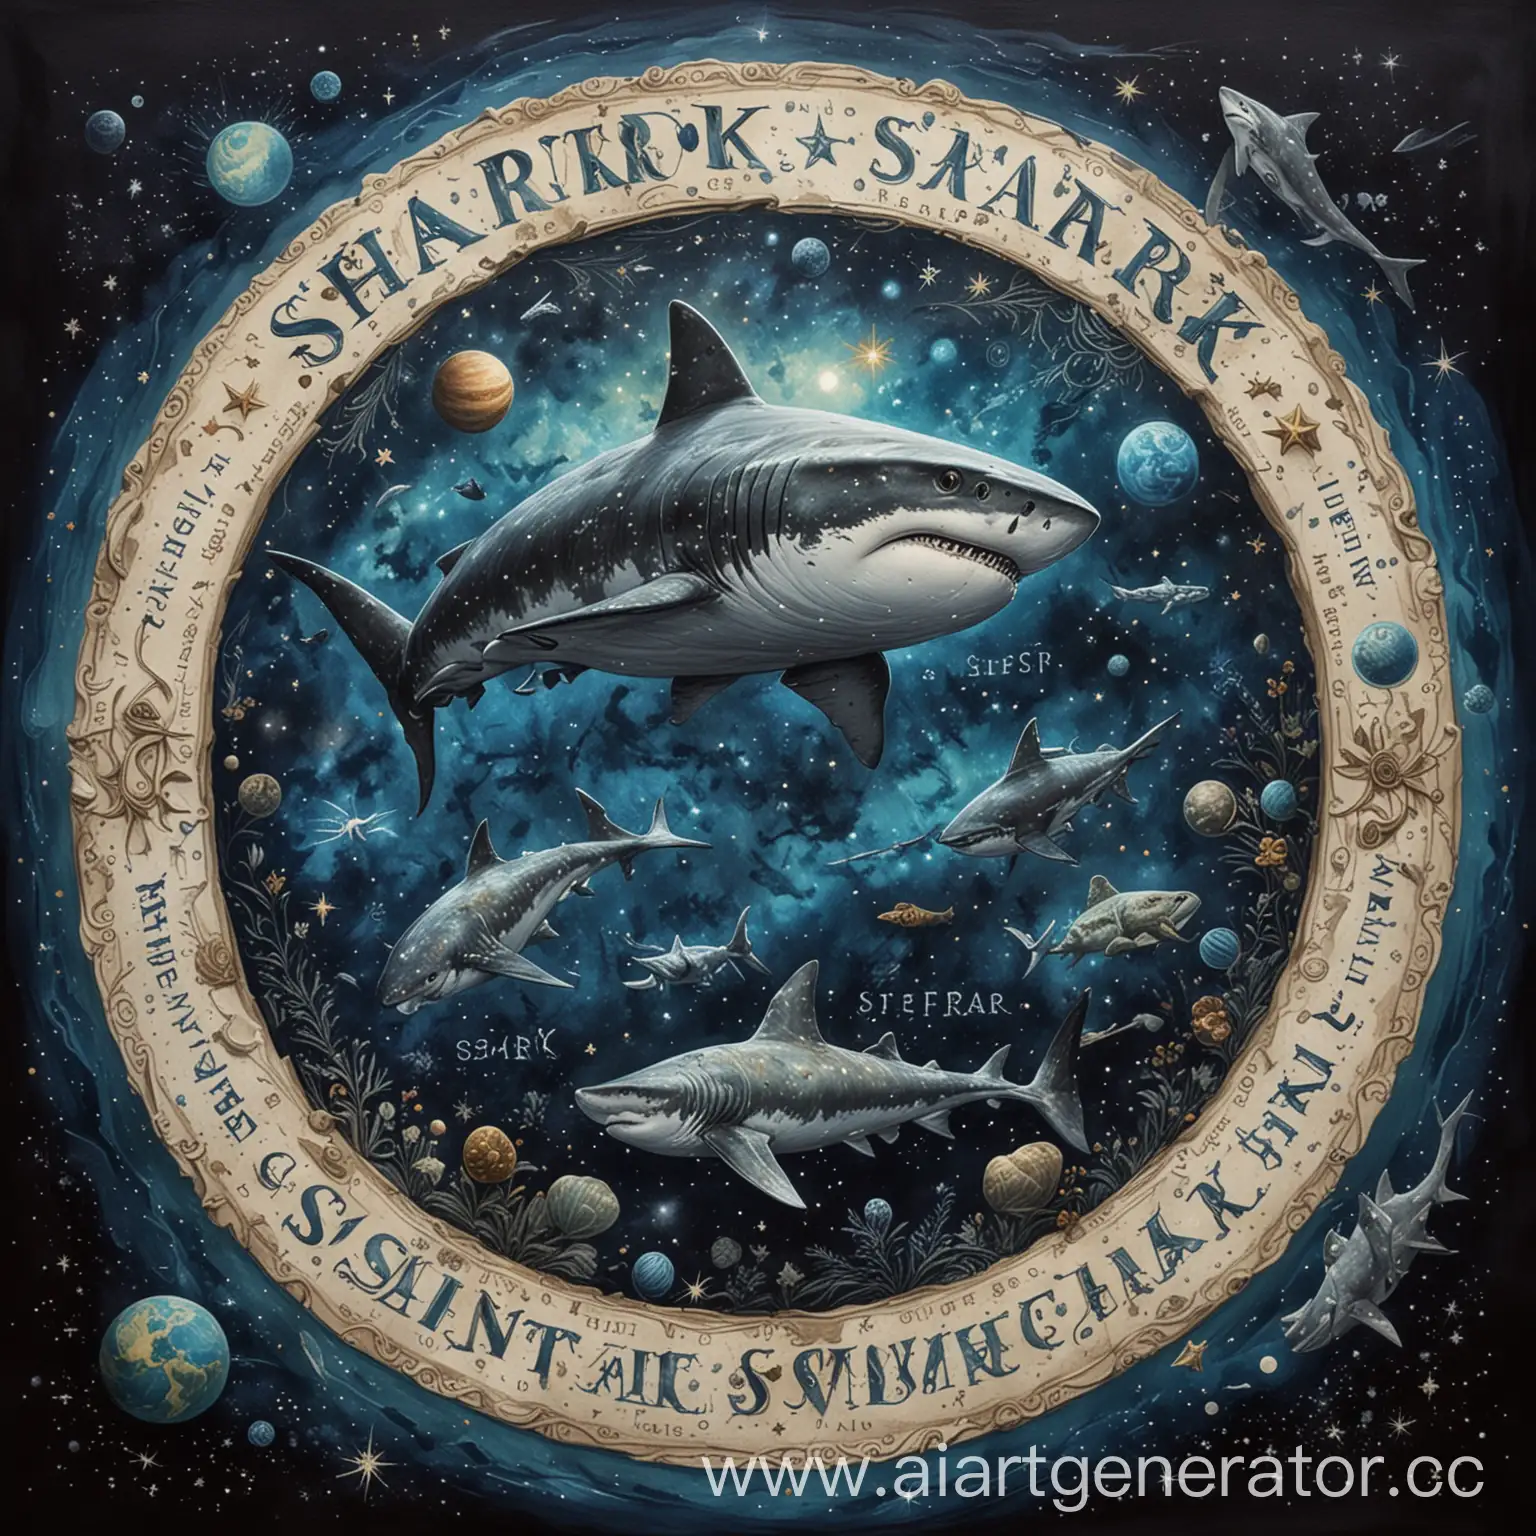 космос на фоне , в середине надпись Starry Depths в морском стиле, справа от надписи акула которая ест планету, а слева планеты